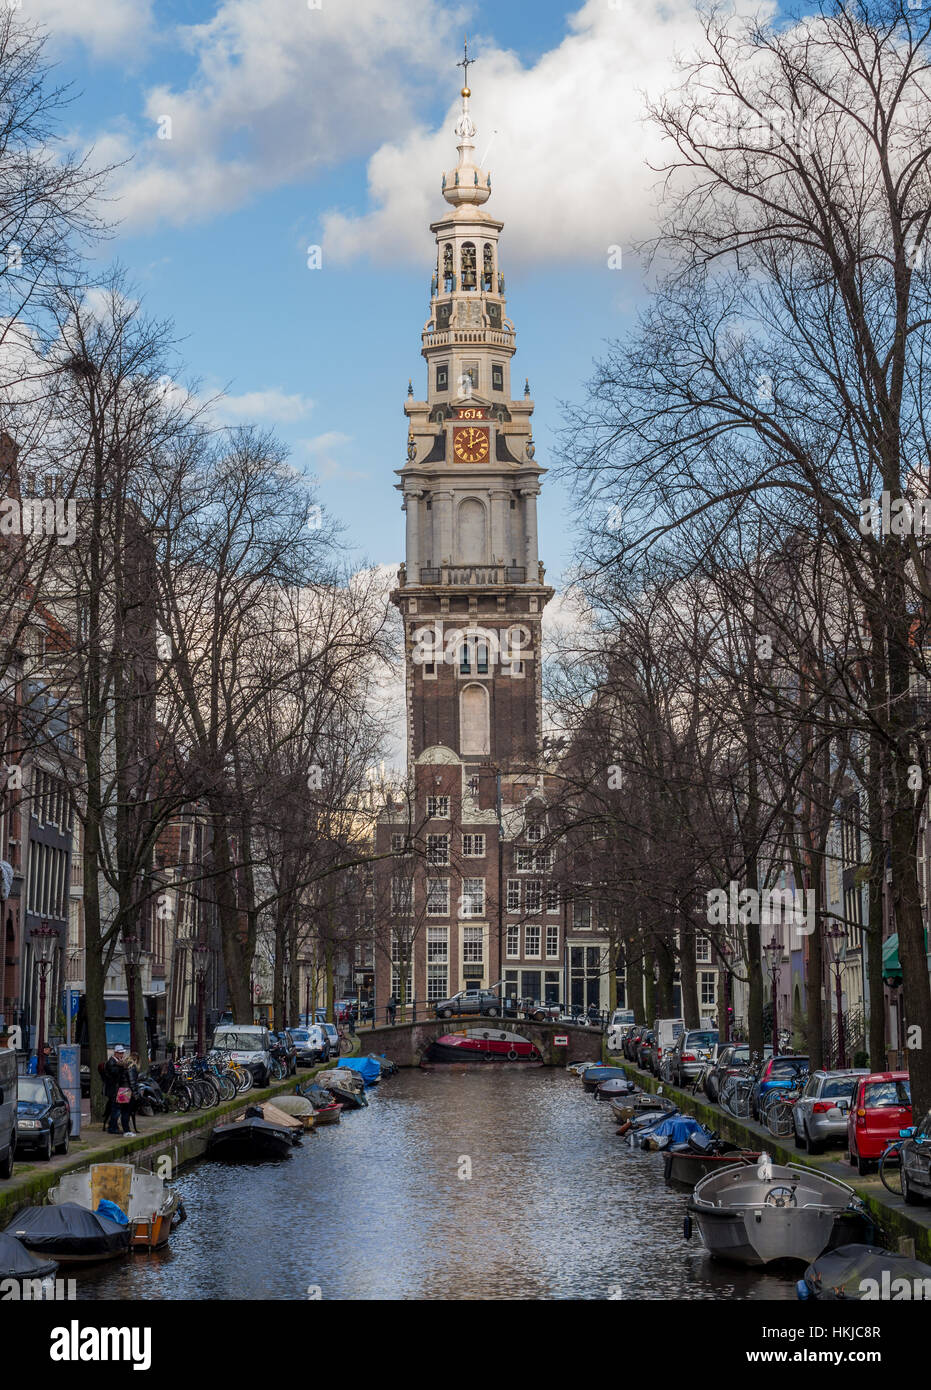 Gran Iglesia en Ámsterdam, Países Bajos Foto de stock